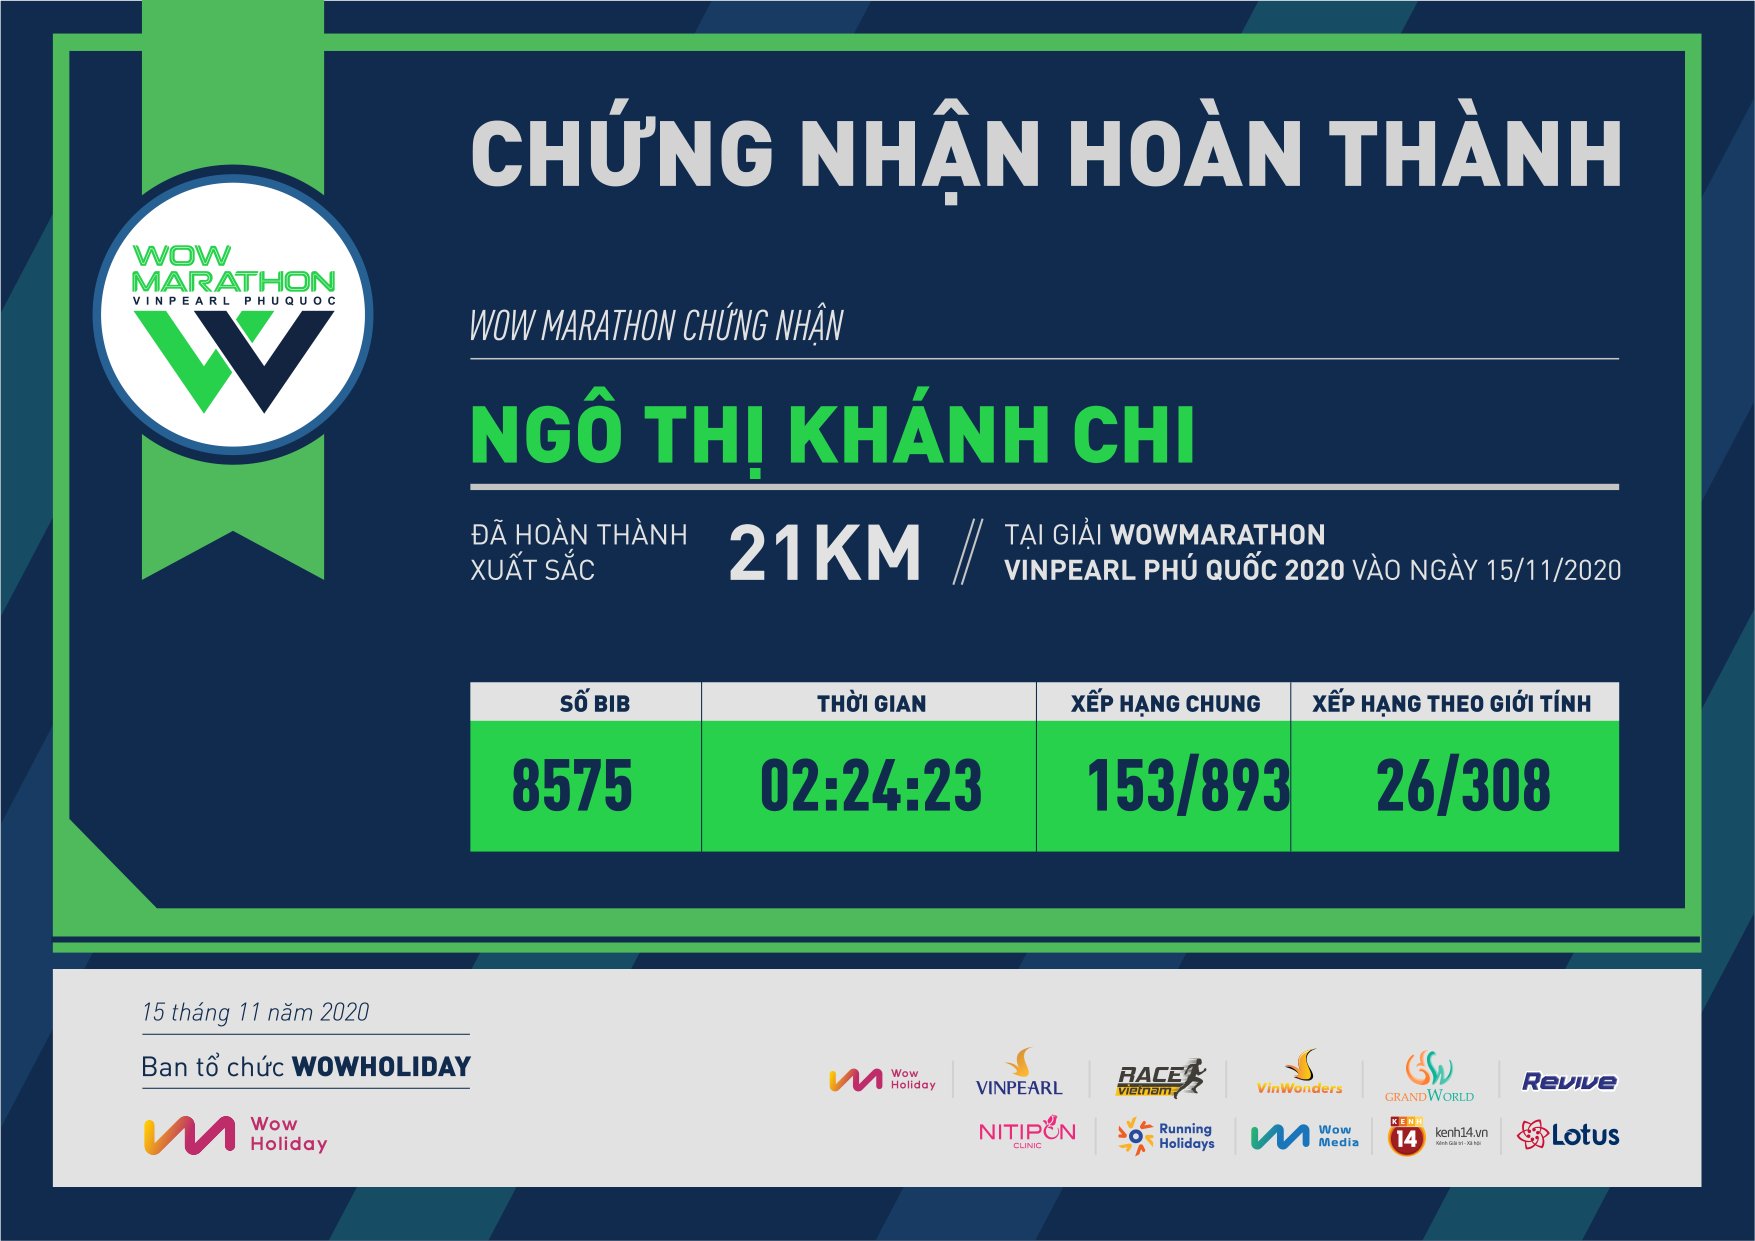 8575 - Ngô Thị Khánh Chi